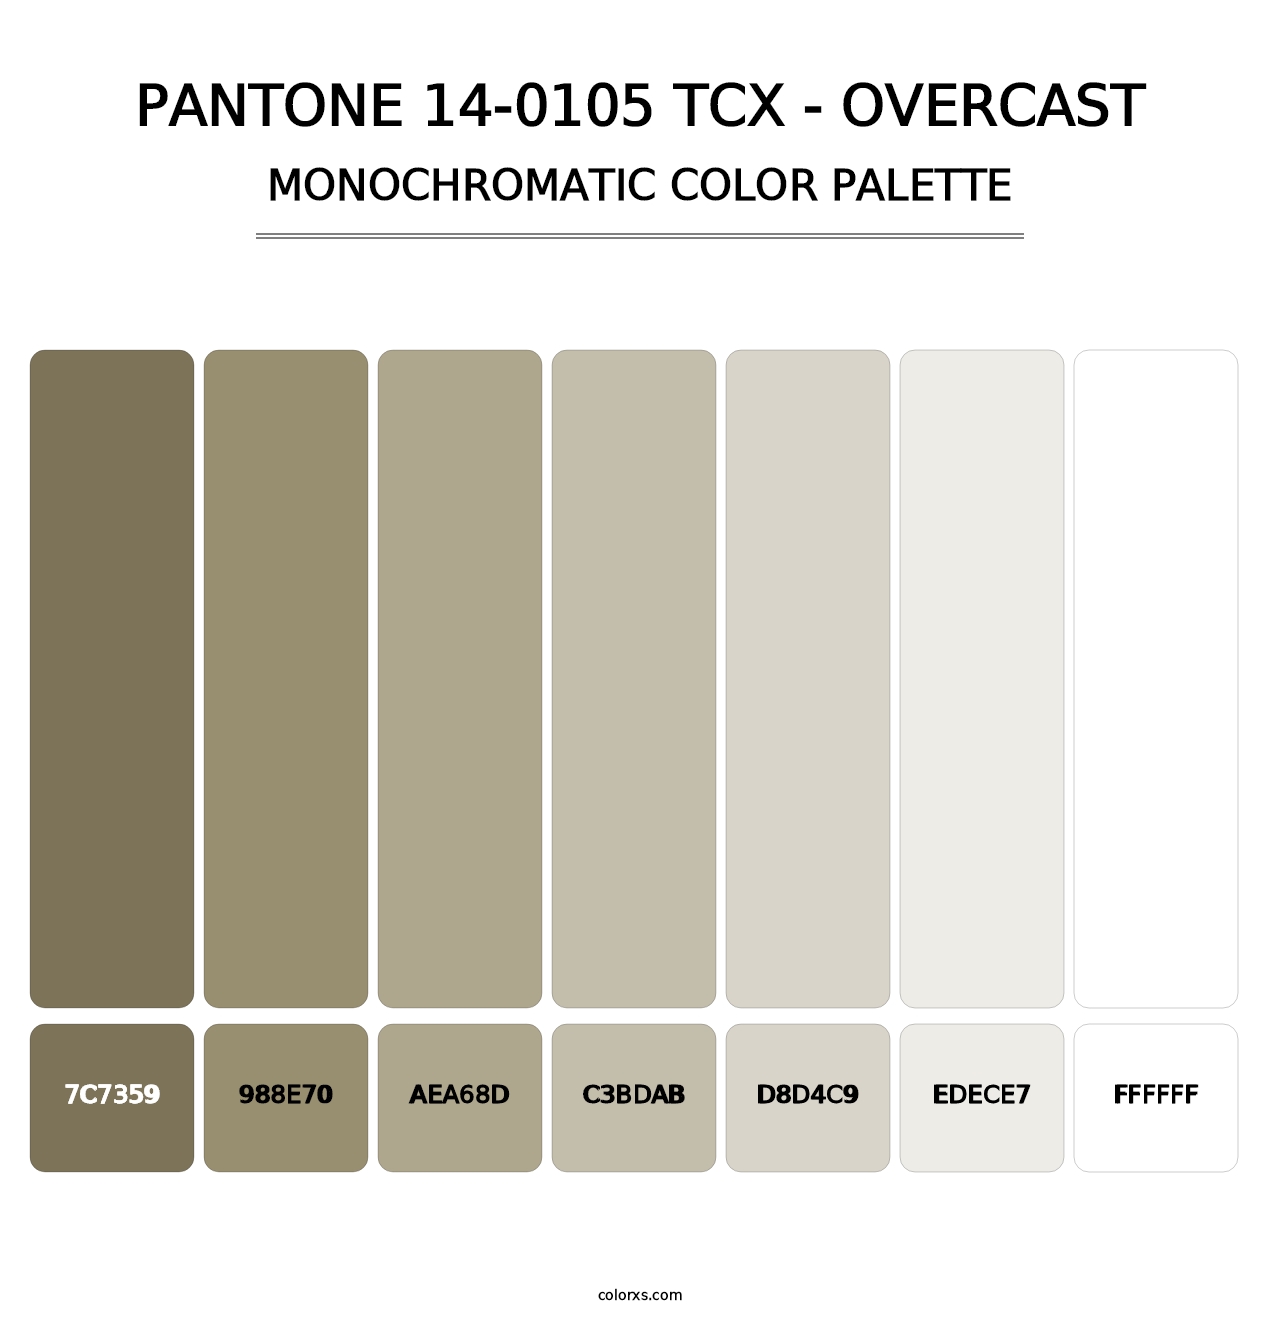 PANTONE 14-0105 TCX - Overcast - Monochromatic Color Palette